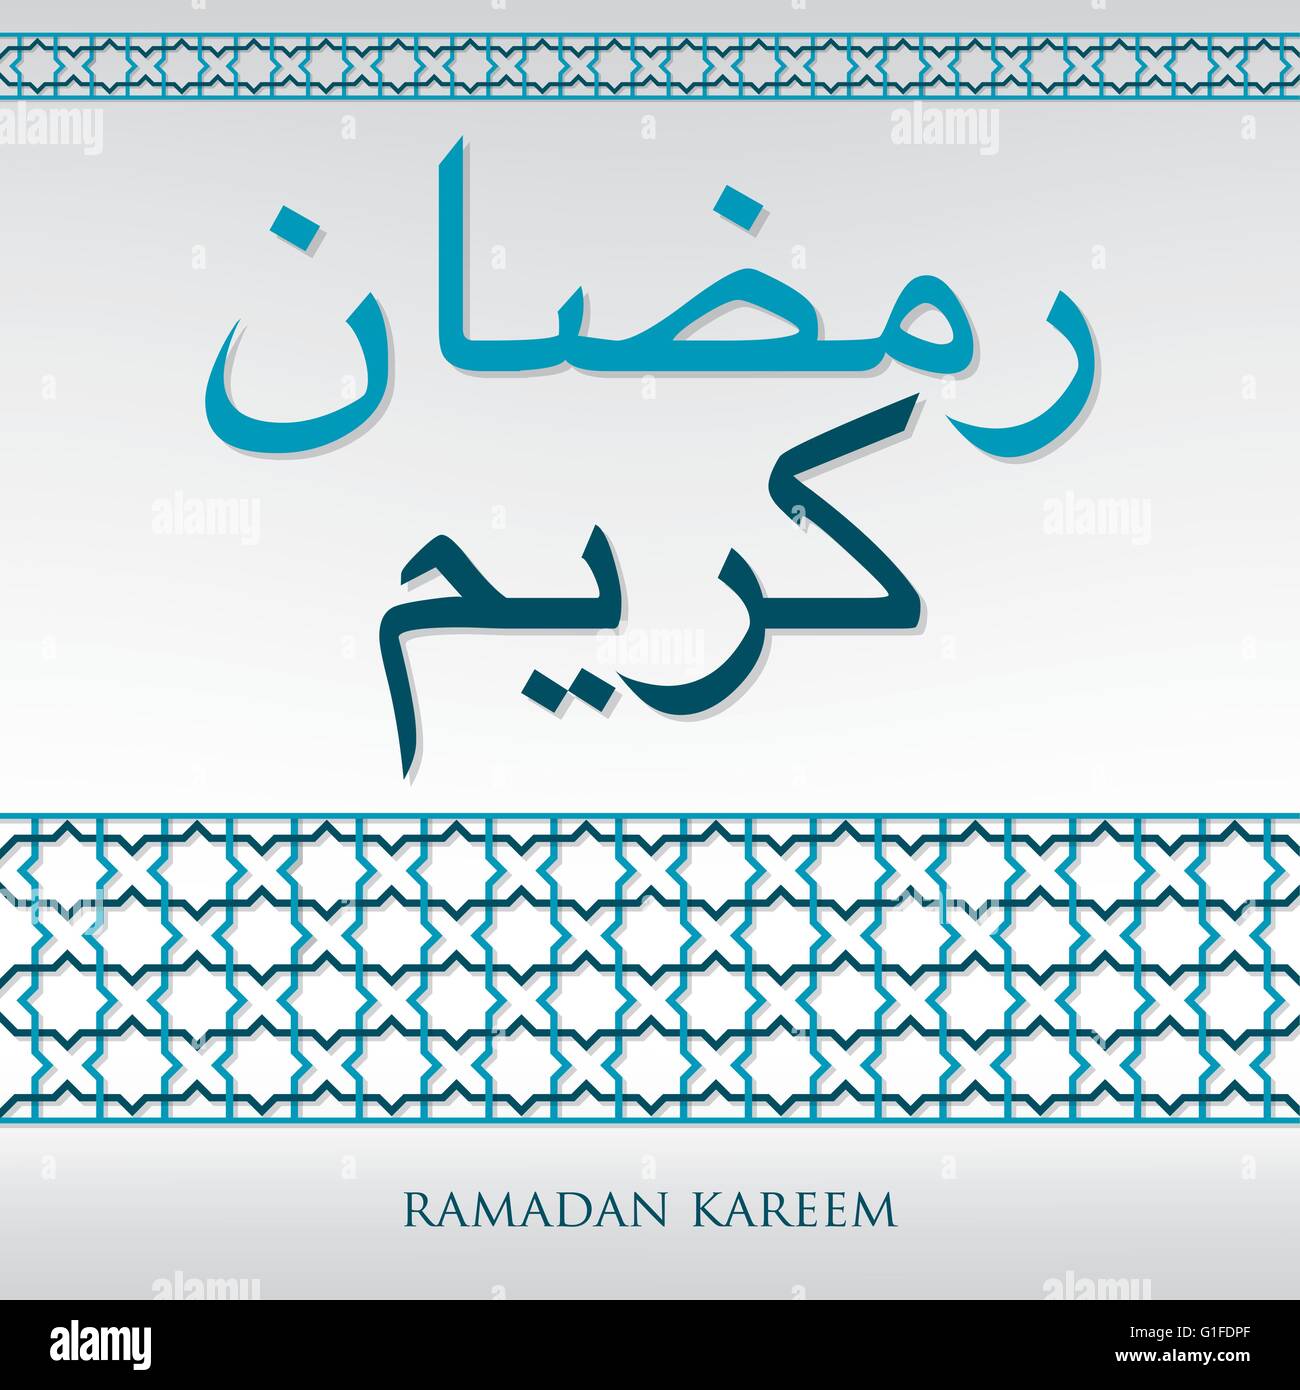 Arabischen weben Muster "Ramadan Kareem" (großzügige Ramadan) im Vektorformat Karte. Stock Vektor